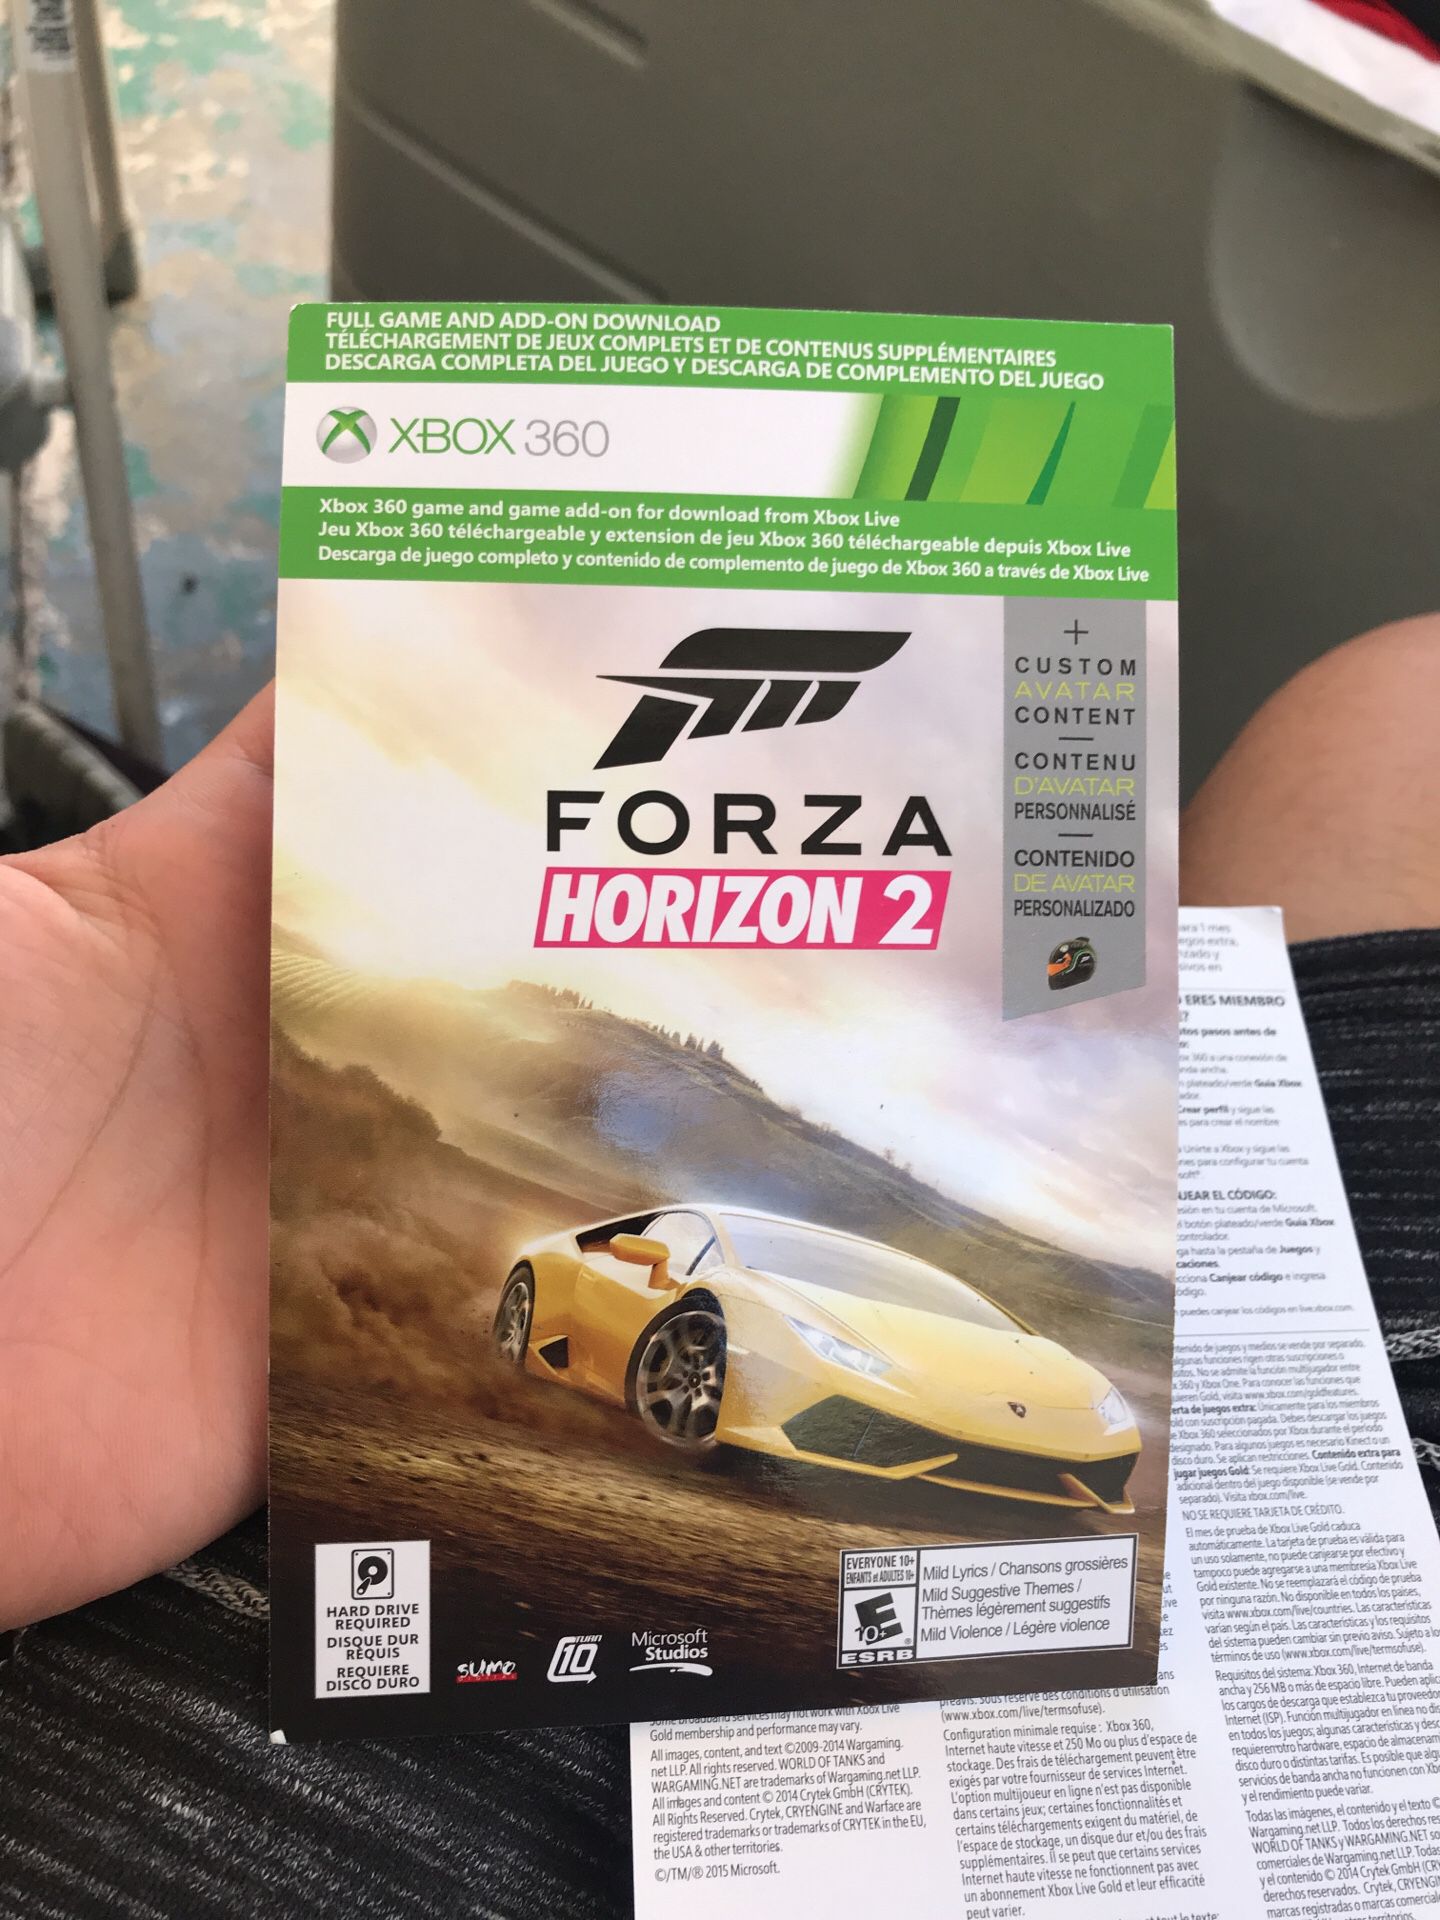 Forza Horizon 2 for Xbox One